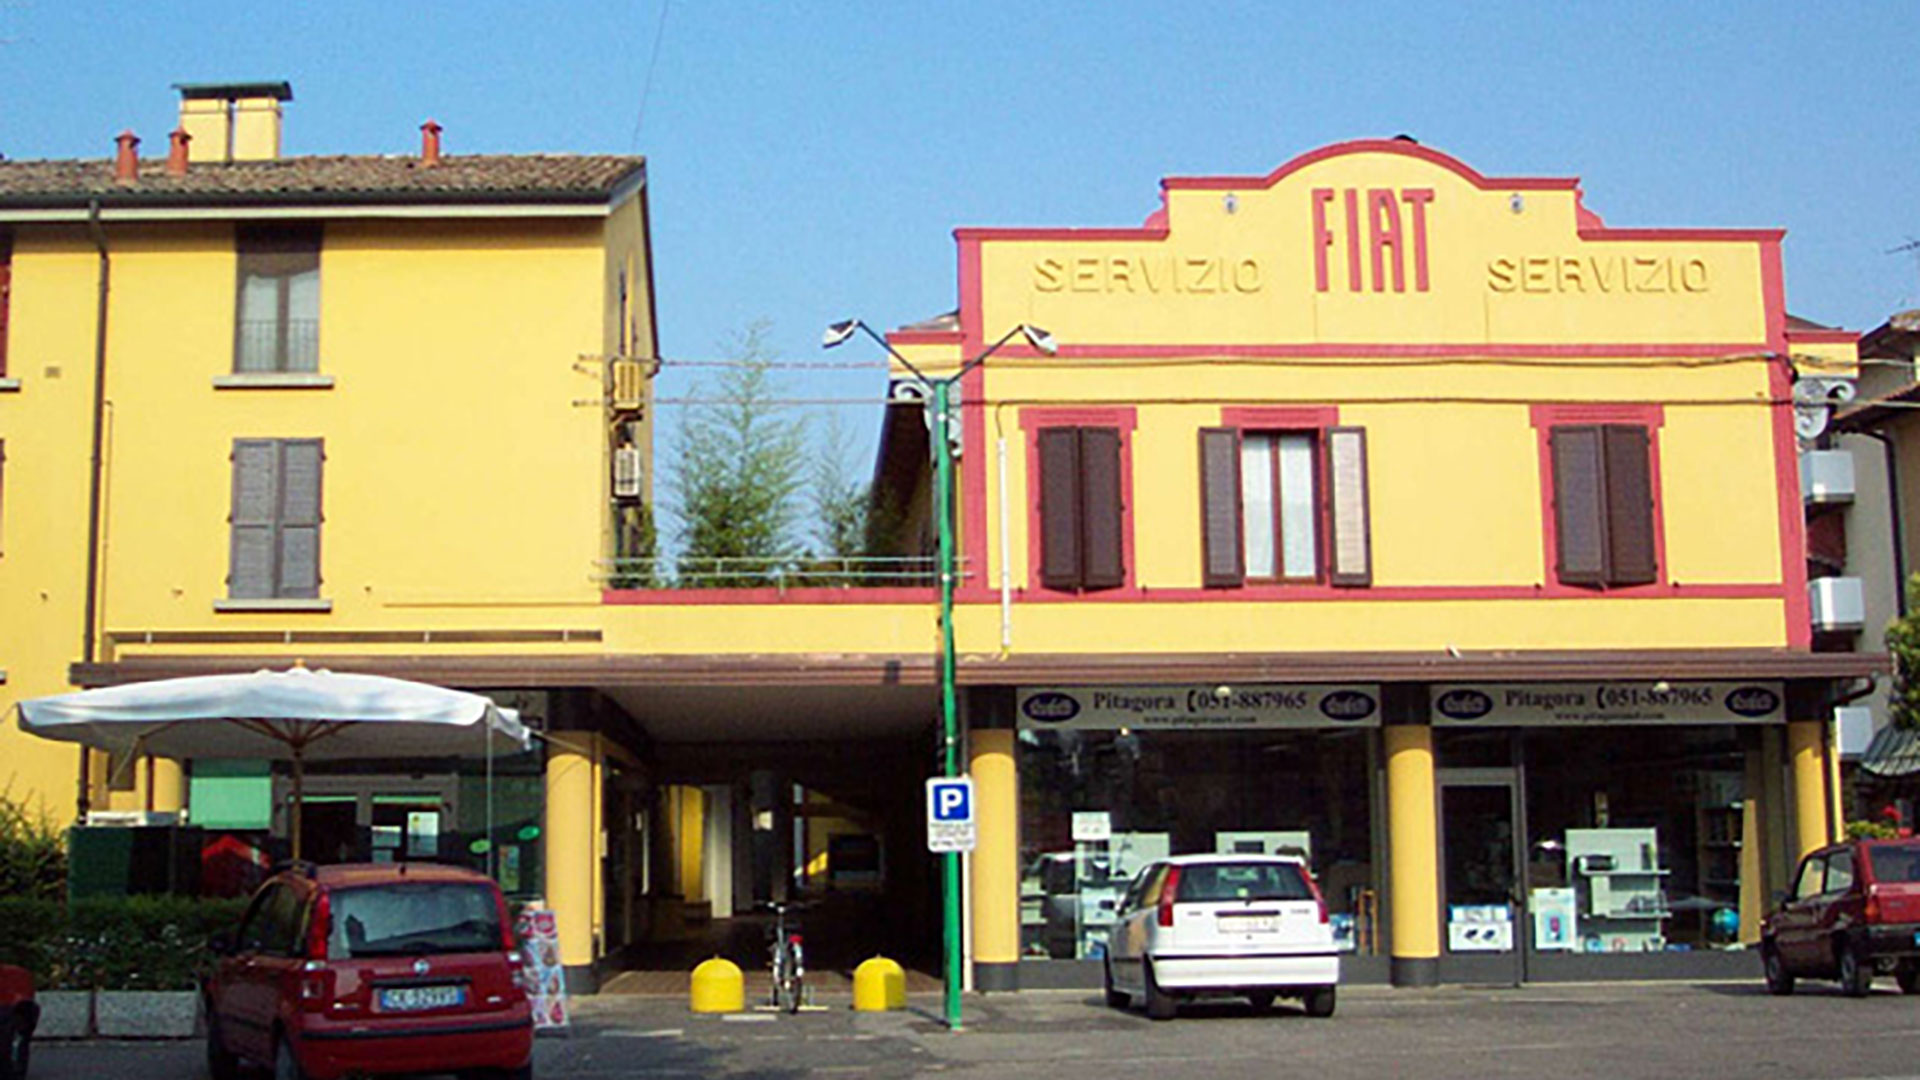 Galleria-FIAT-Molinella-ediltecnica